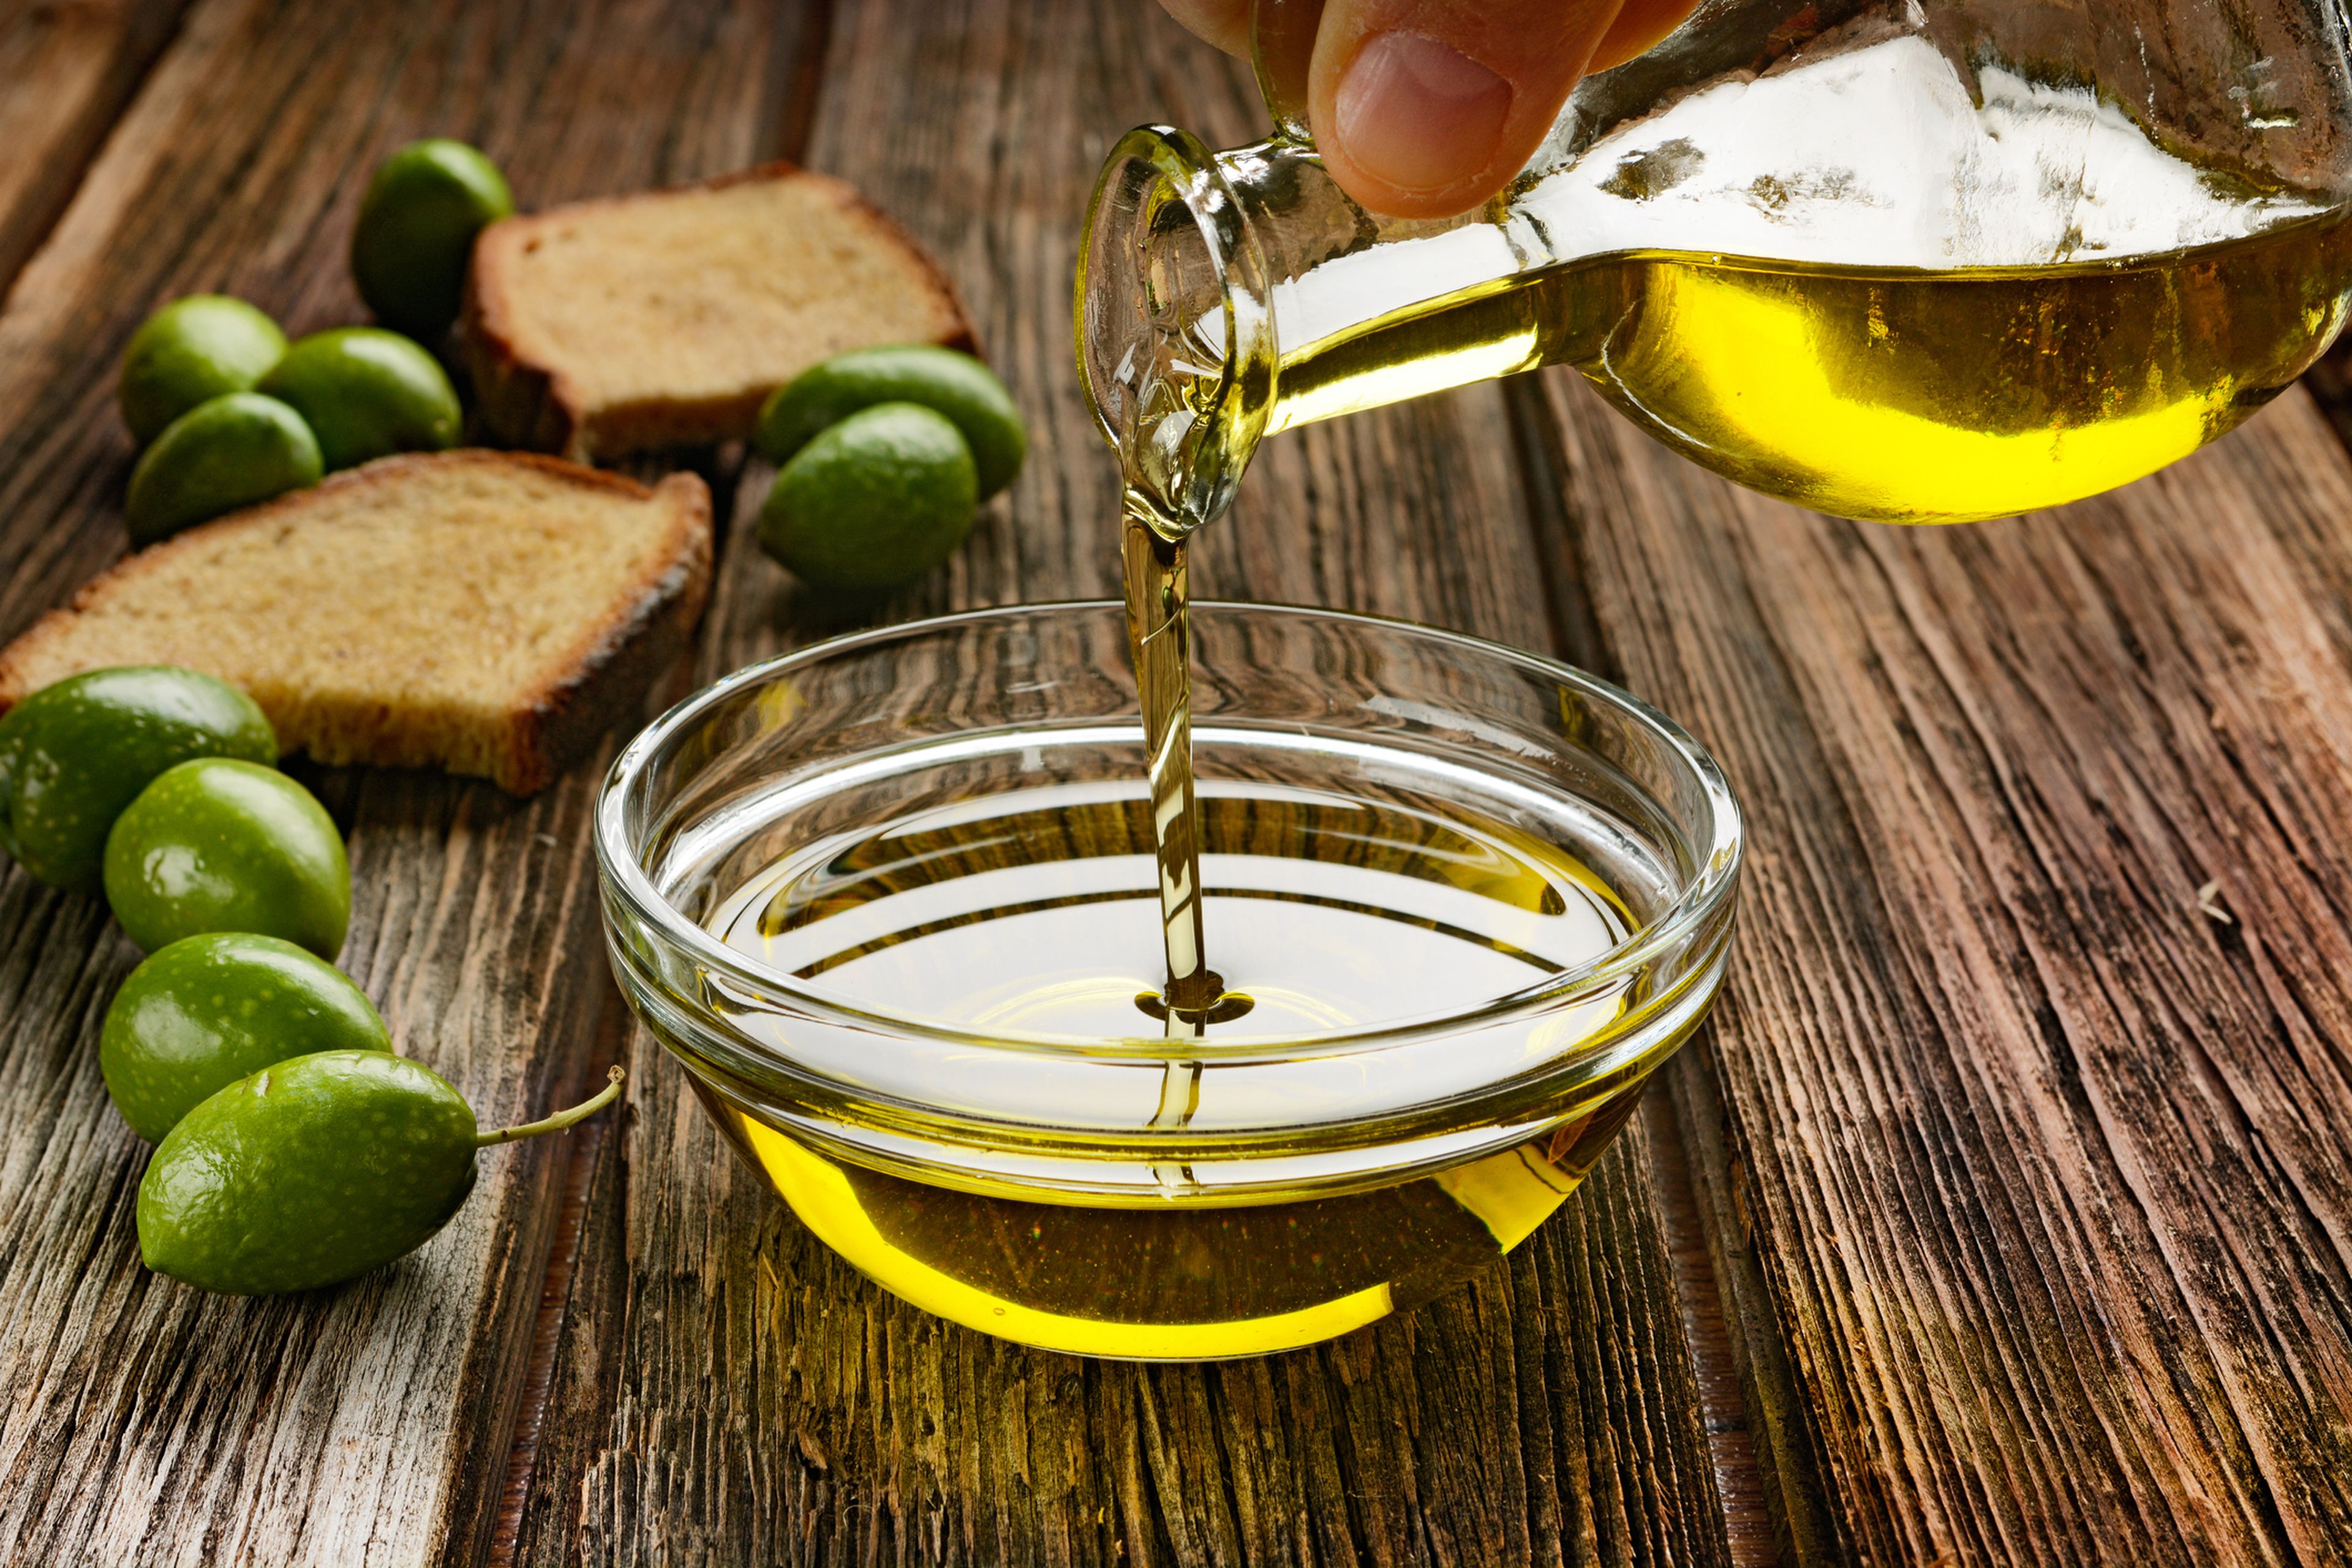 Estos son los peores aceites de oliva virgen extra de los supermercados, según la OCU; los de Lidl y La Española, entre los señalados